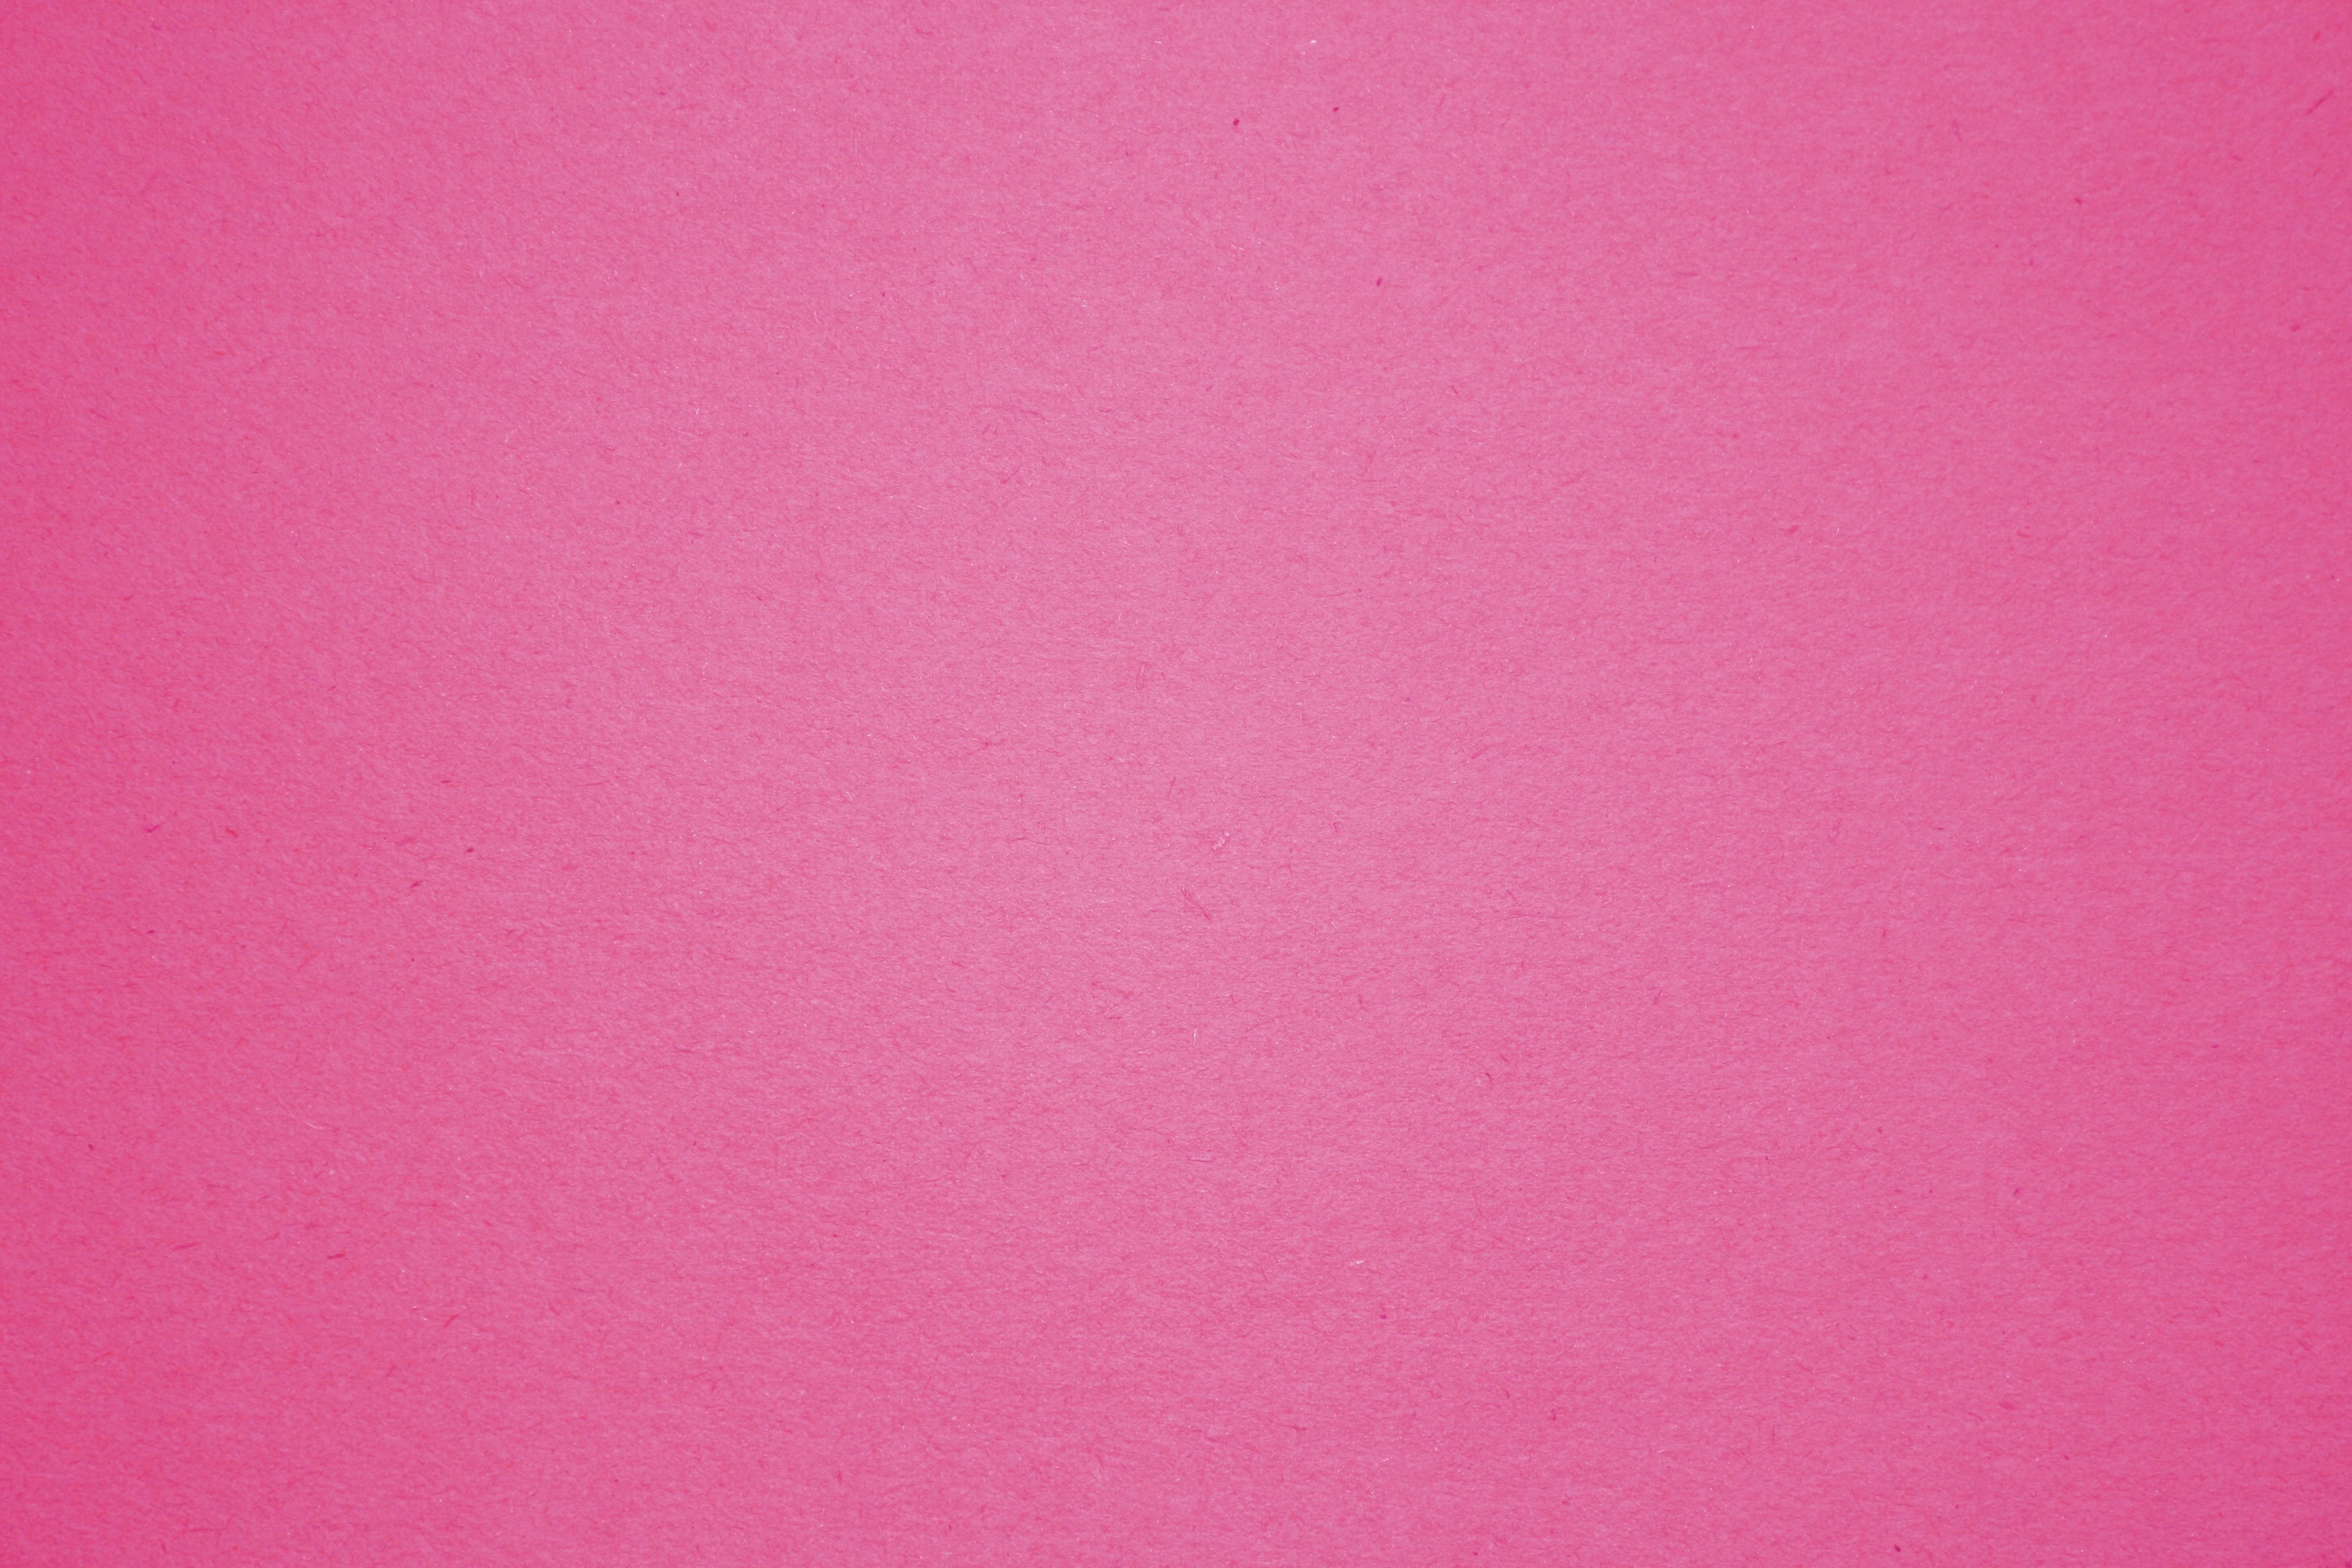 Фон обои однотонные. U337 st9 фуксия розовая. Розовый цвет. Розовый фон. Розовый цвет однотонный.